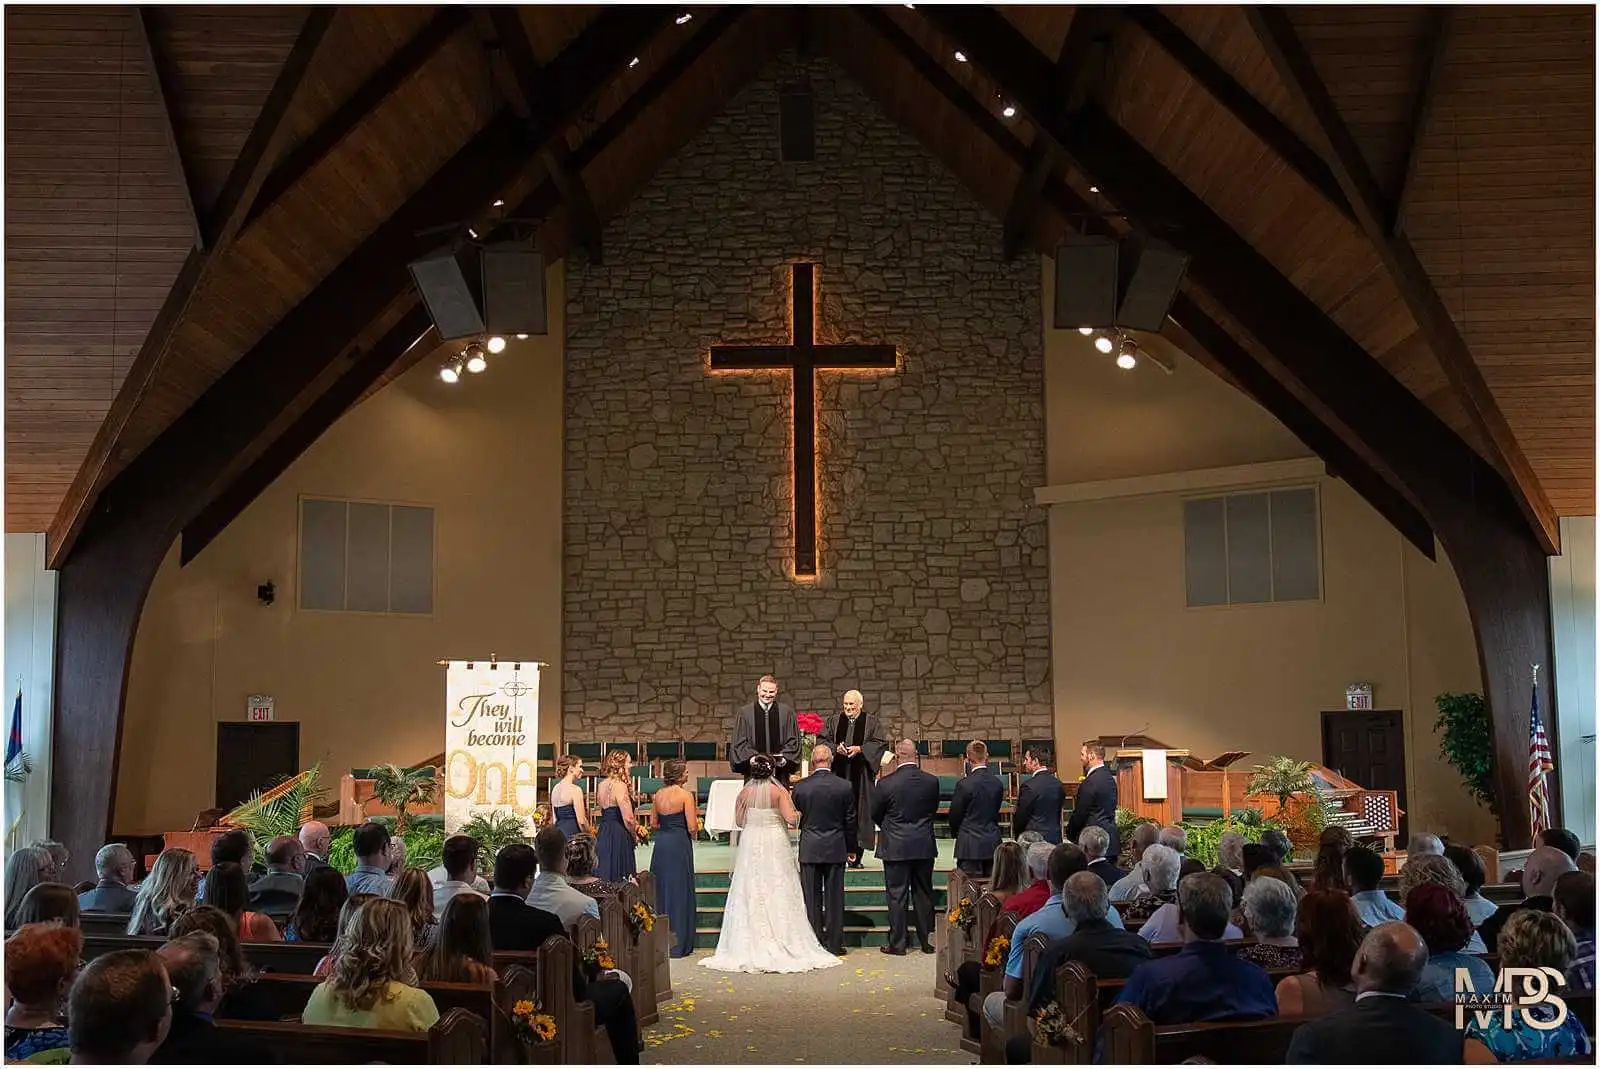 Normandy Church Dayton Ohio wedding ceremony